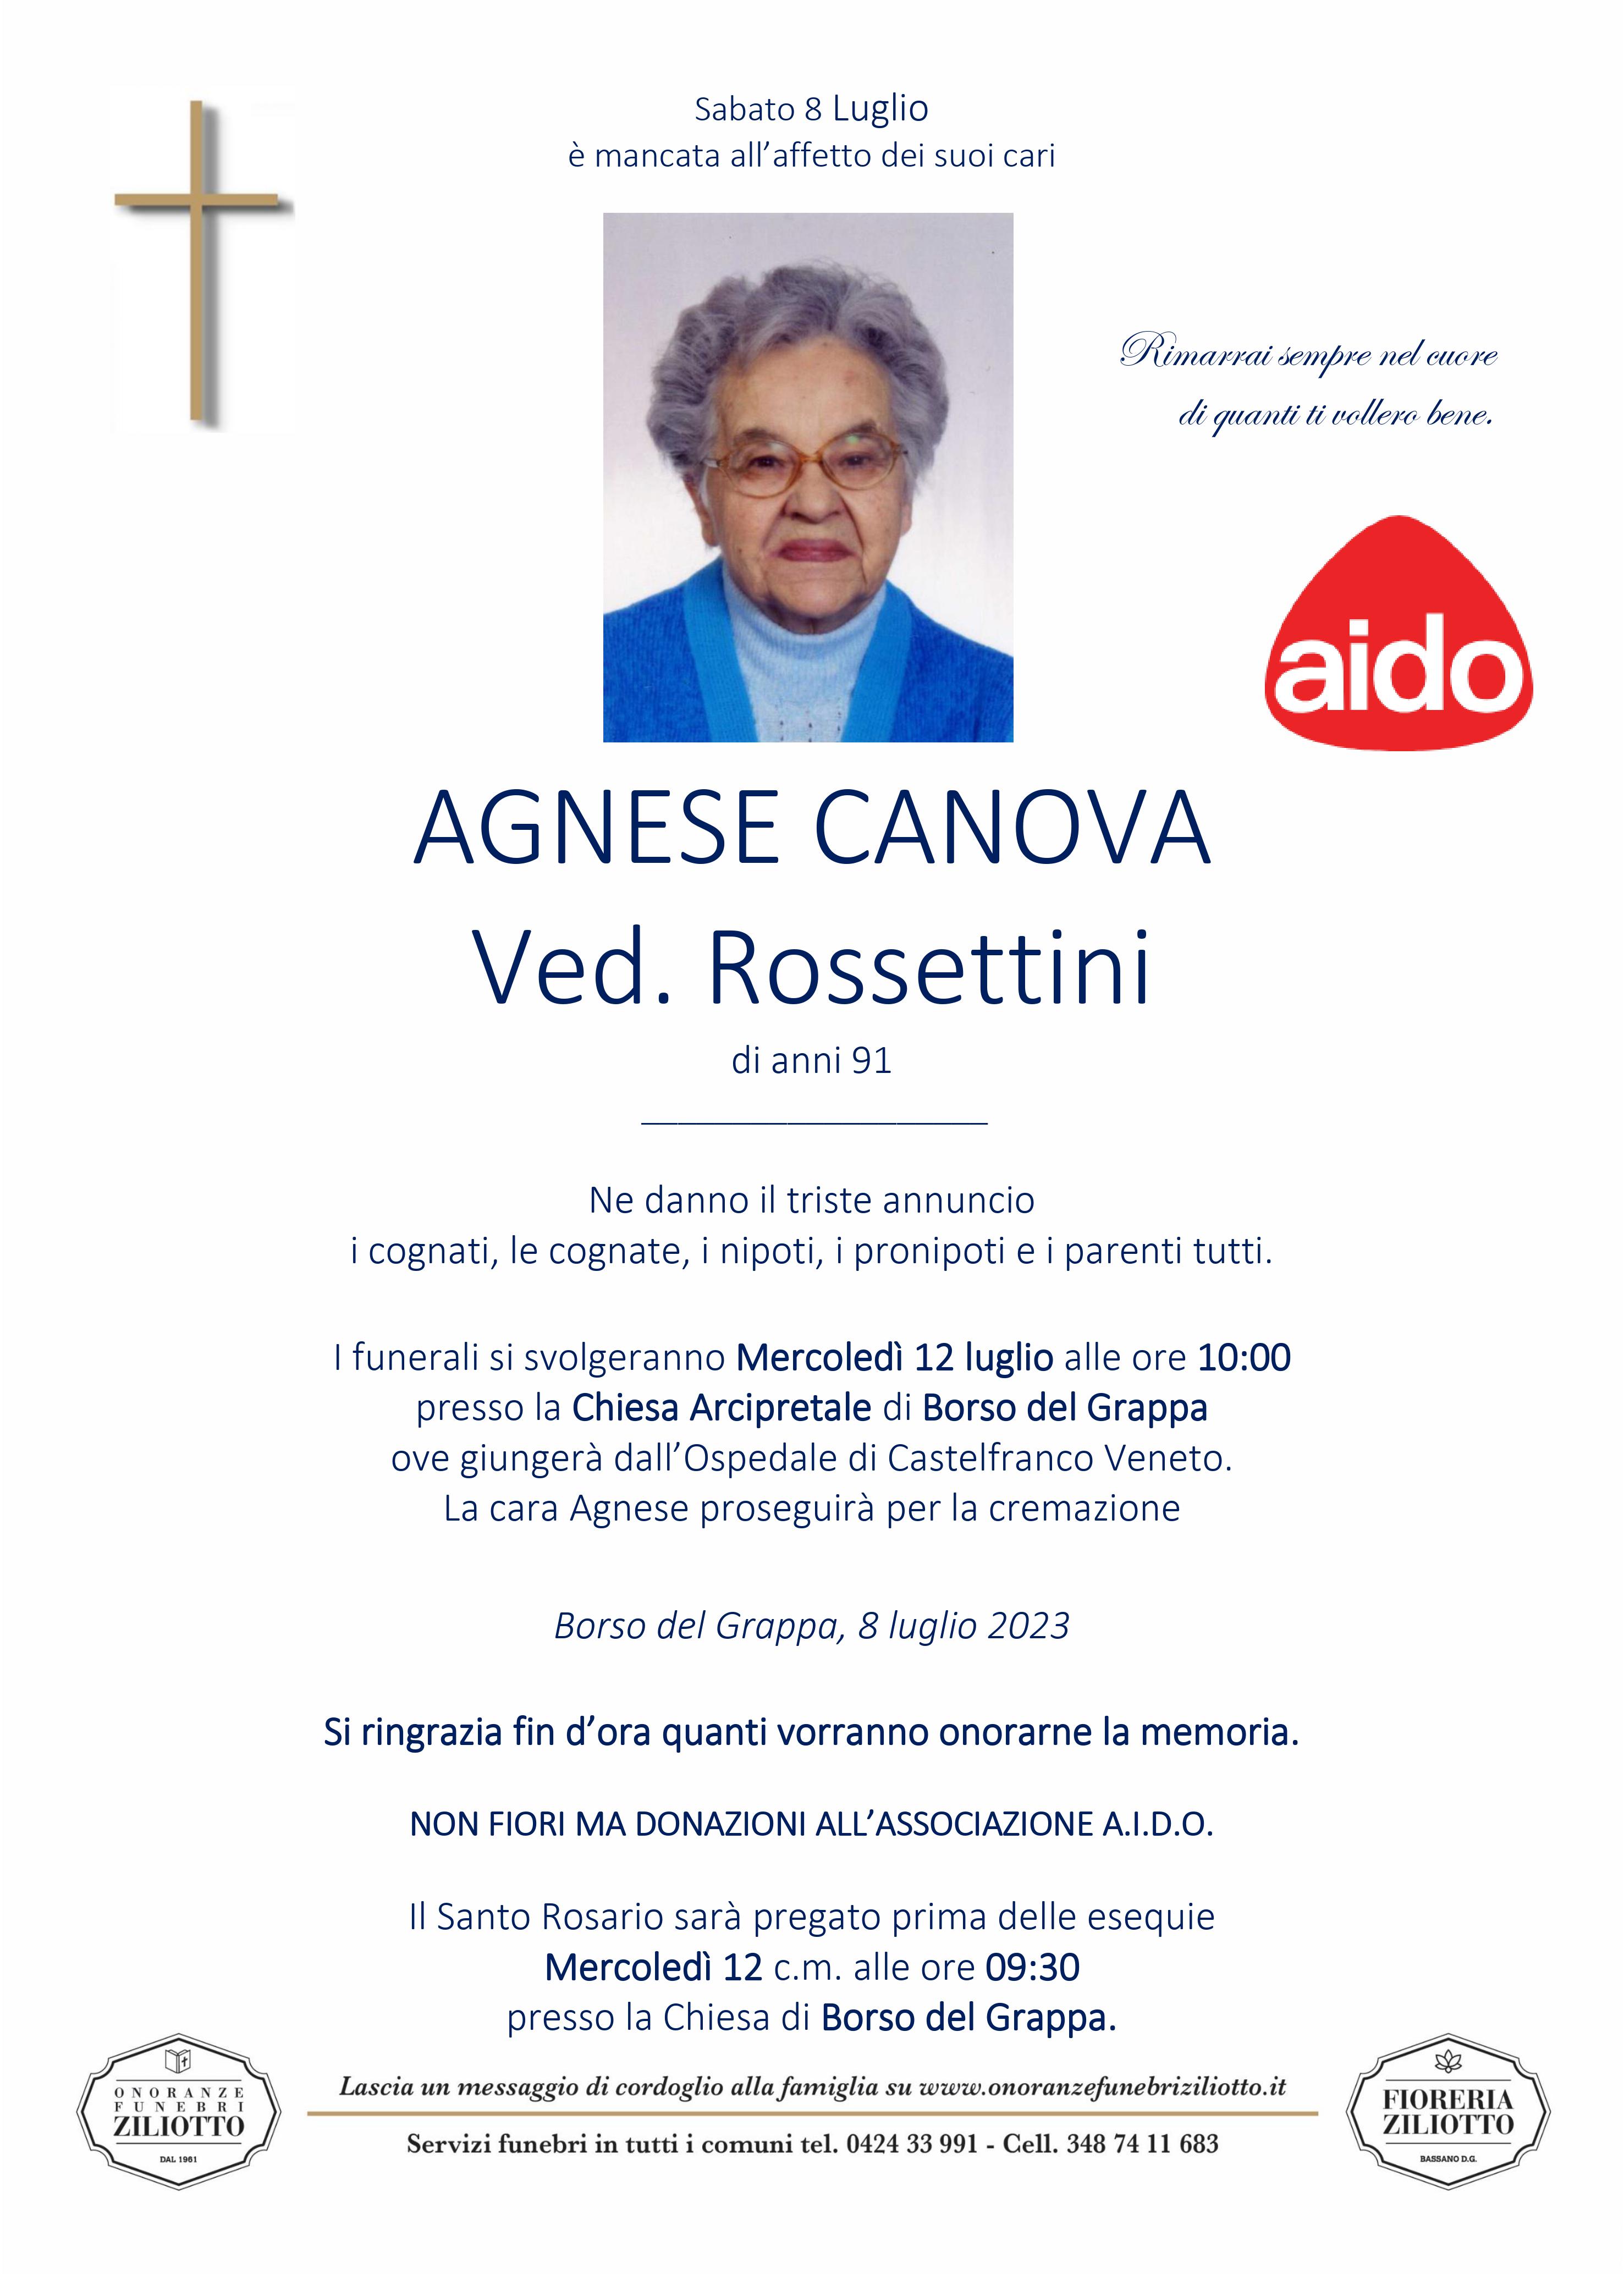 Agnese Canova - 91 anni - Borso del Grappa